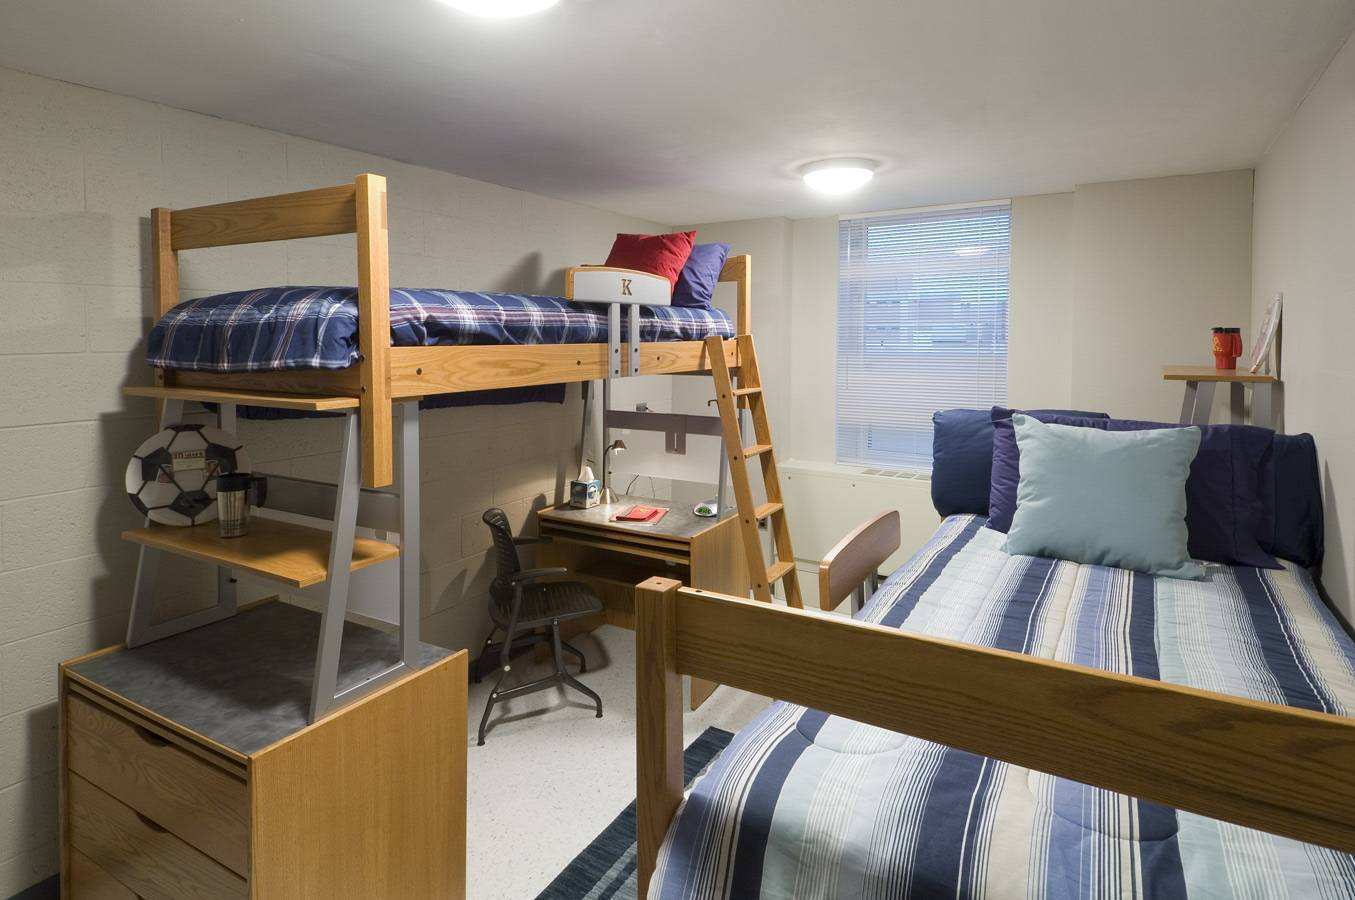 College room. Комната в общежитии. Интерьер комнаты в общаге. Комната для троих мальчиков. Комната в общежитии на двоих.